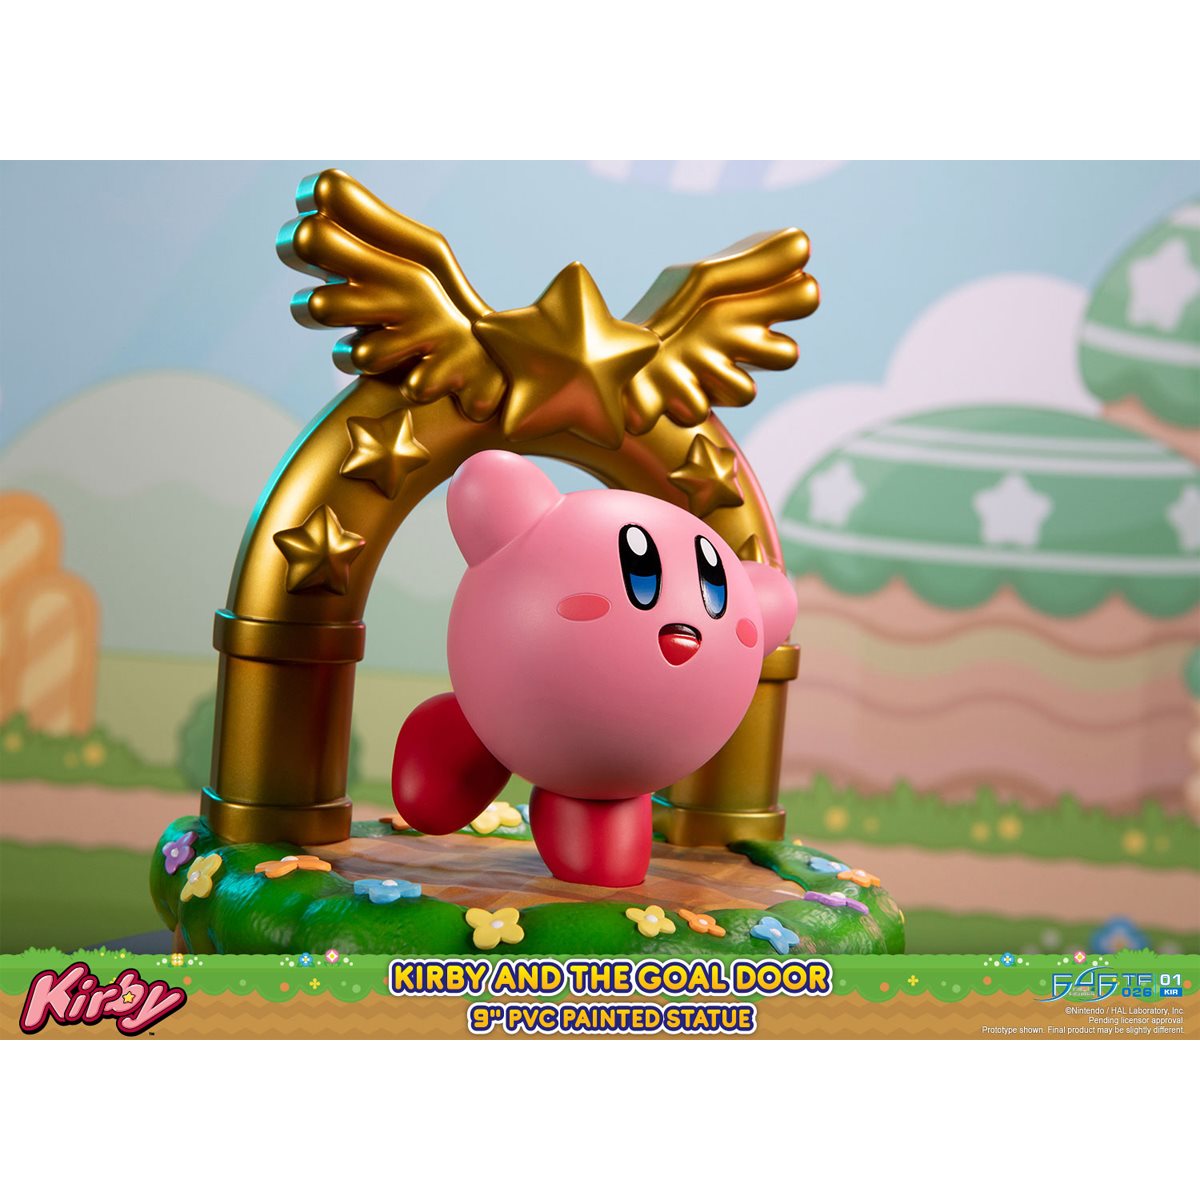 Kirby goal door figure